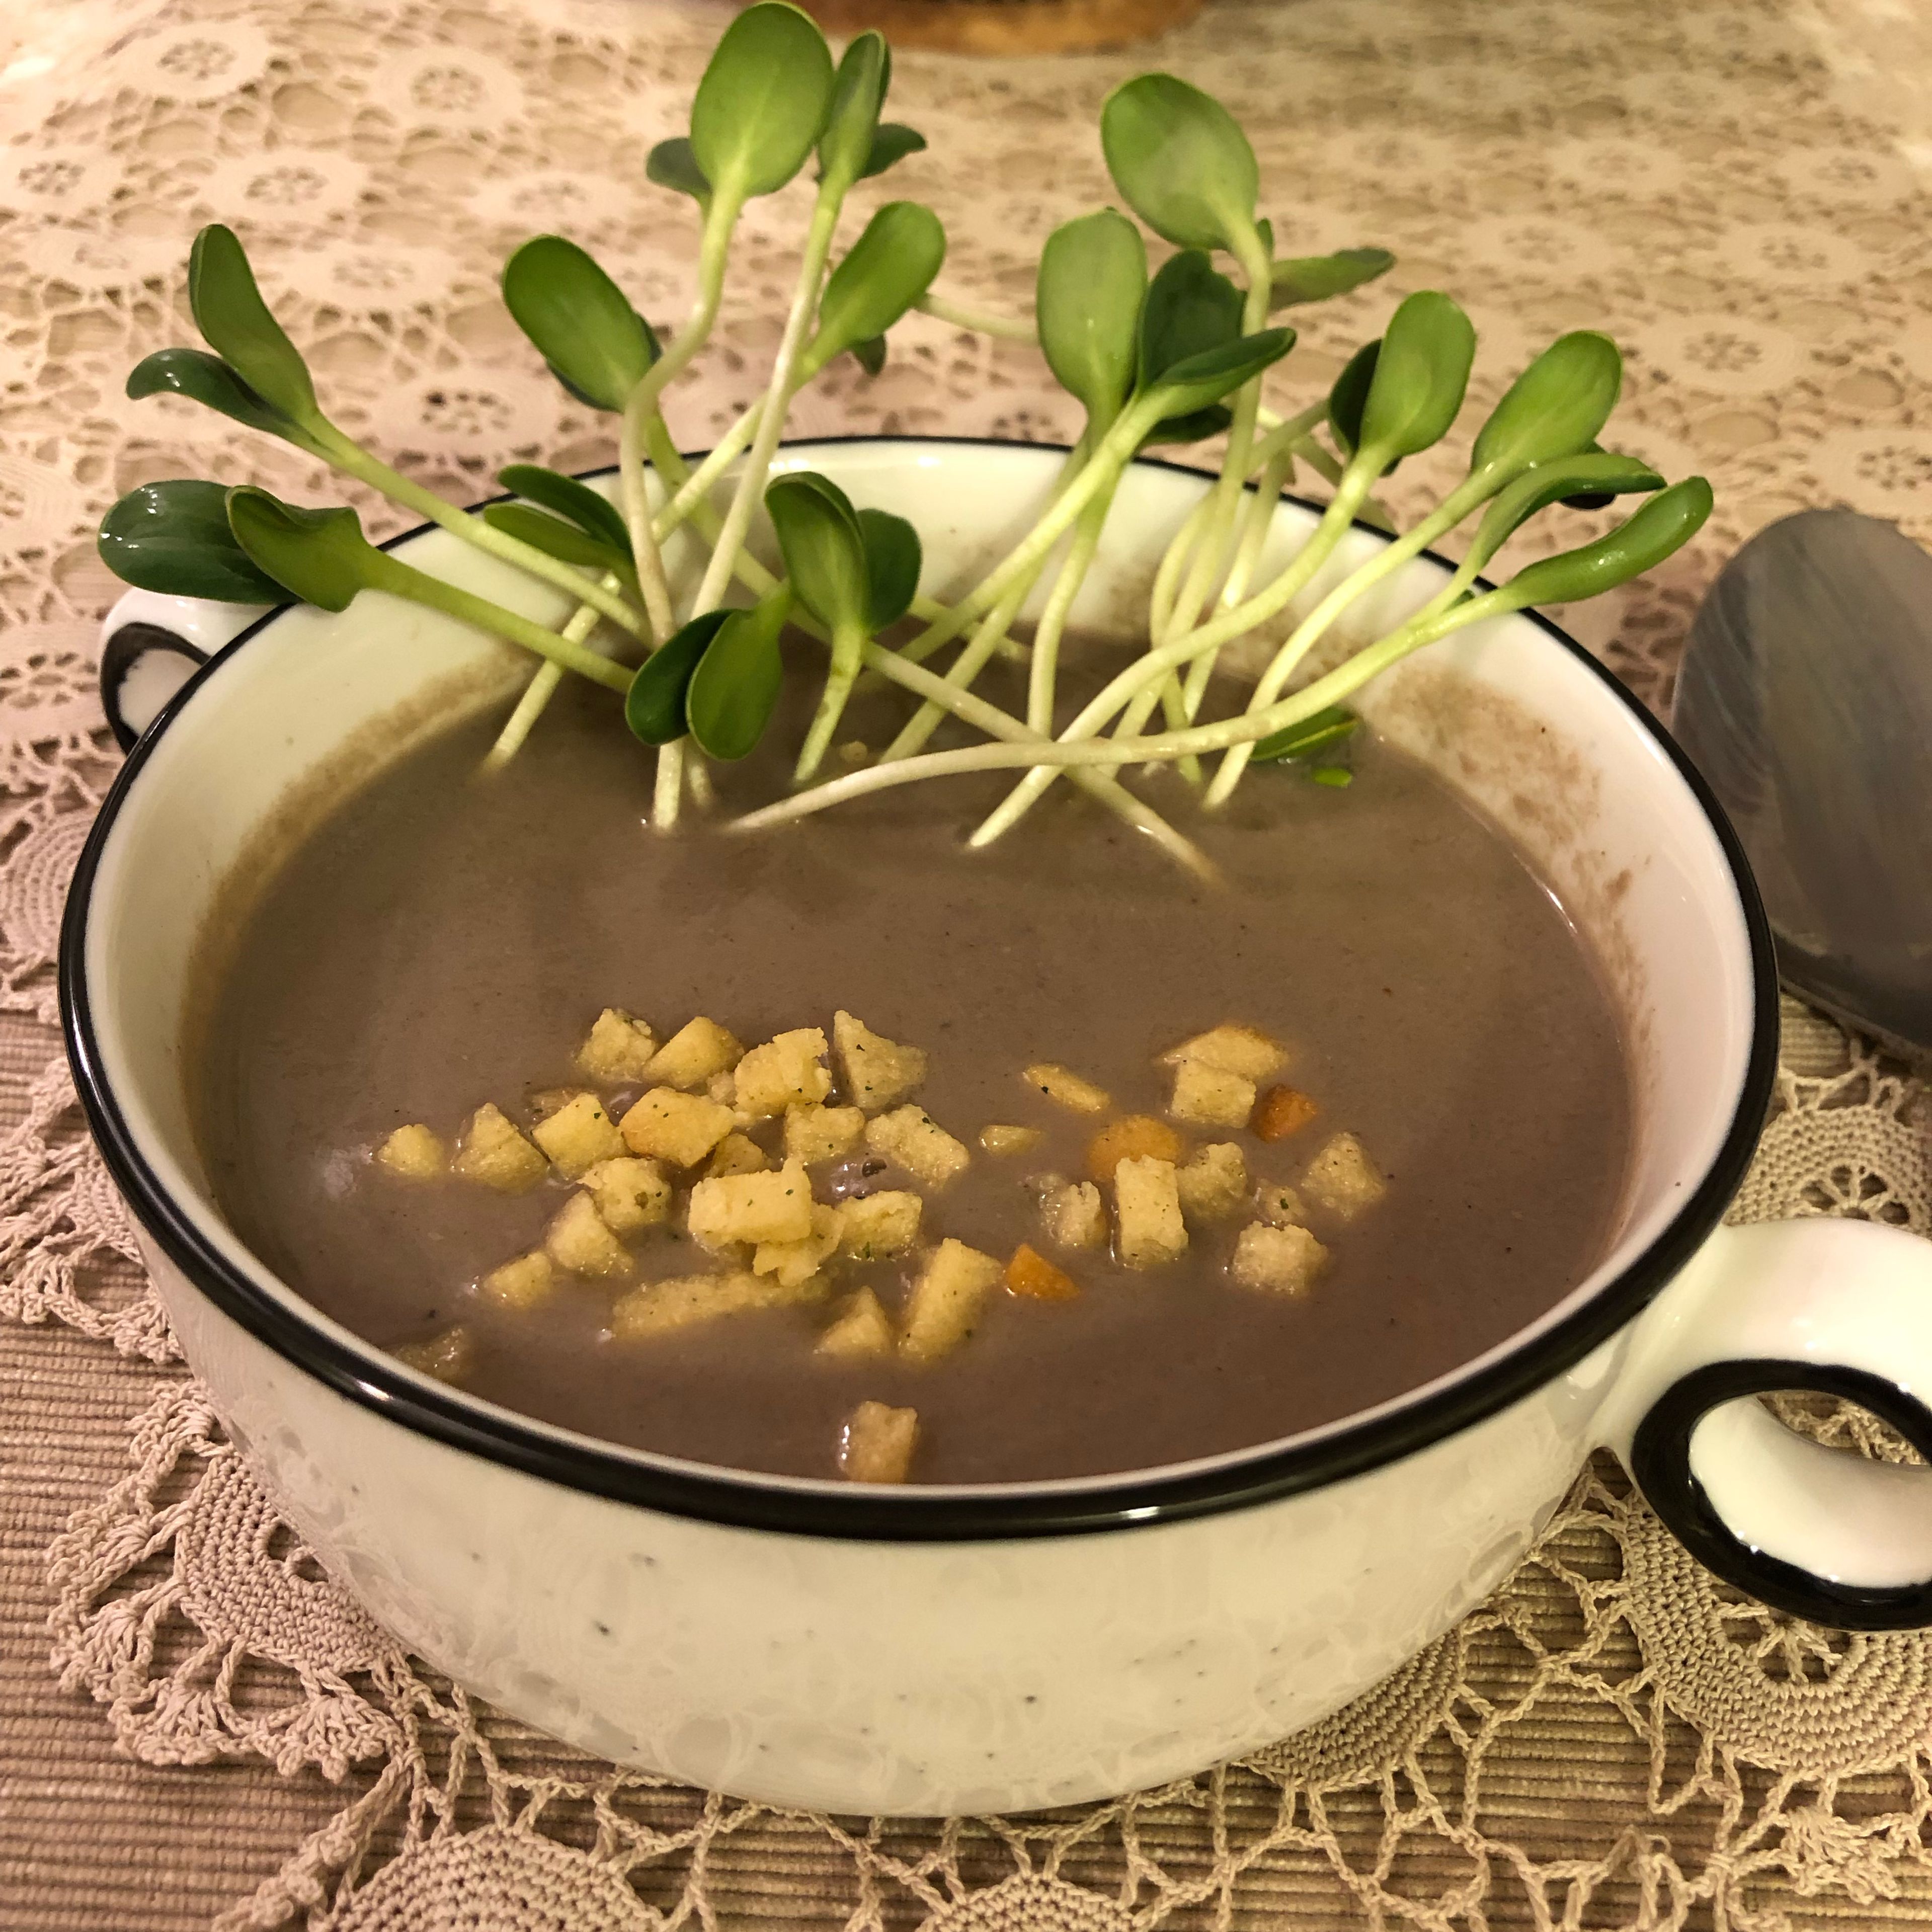 Champignon soup